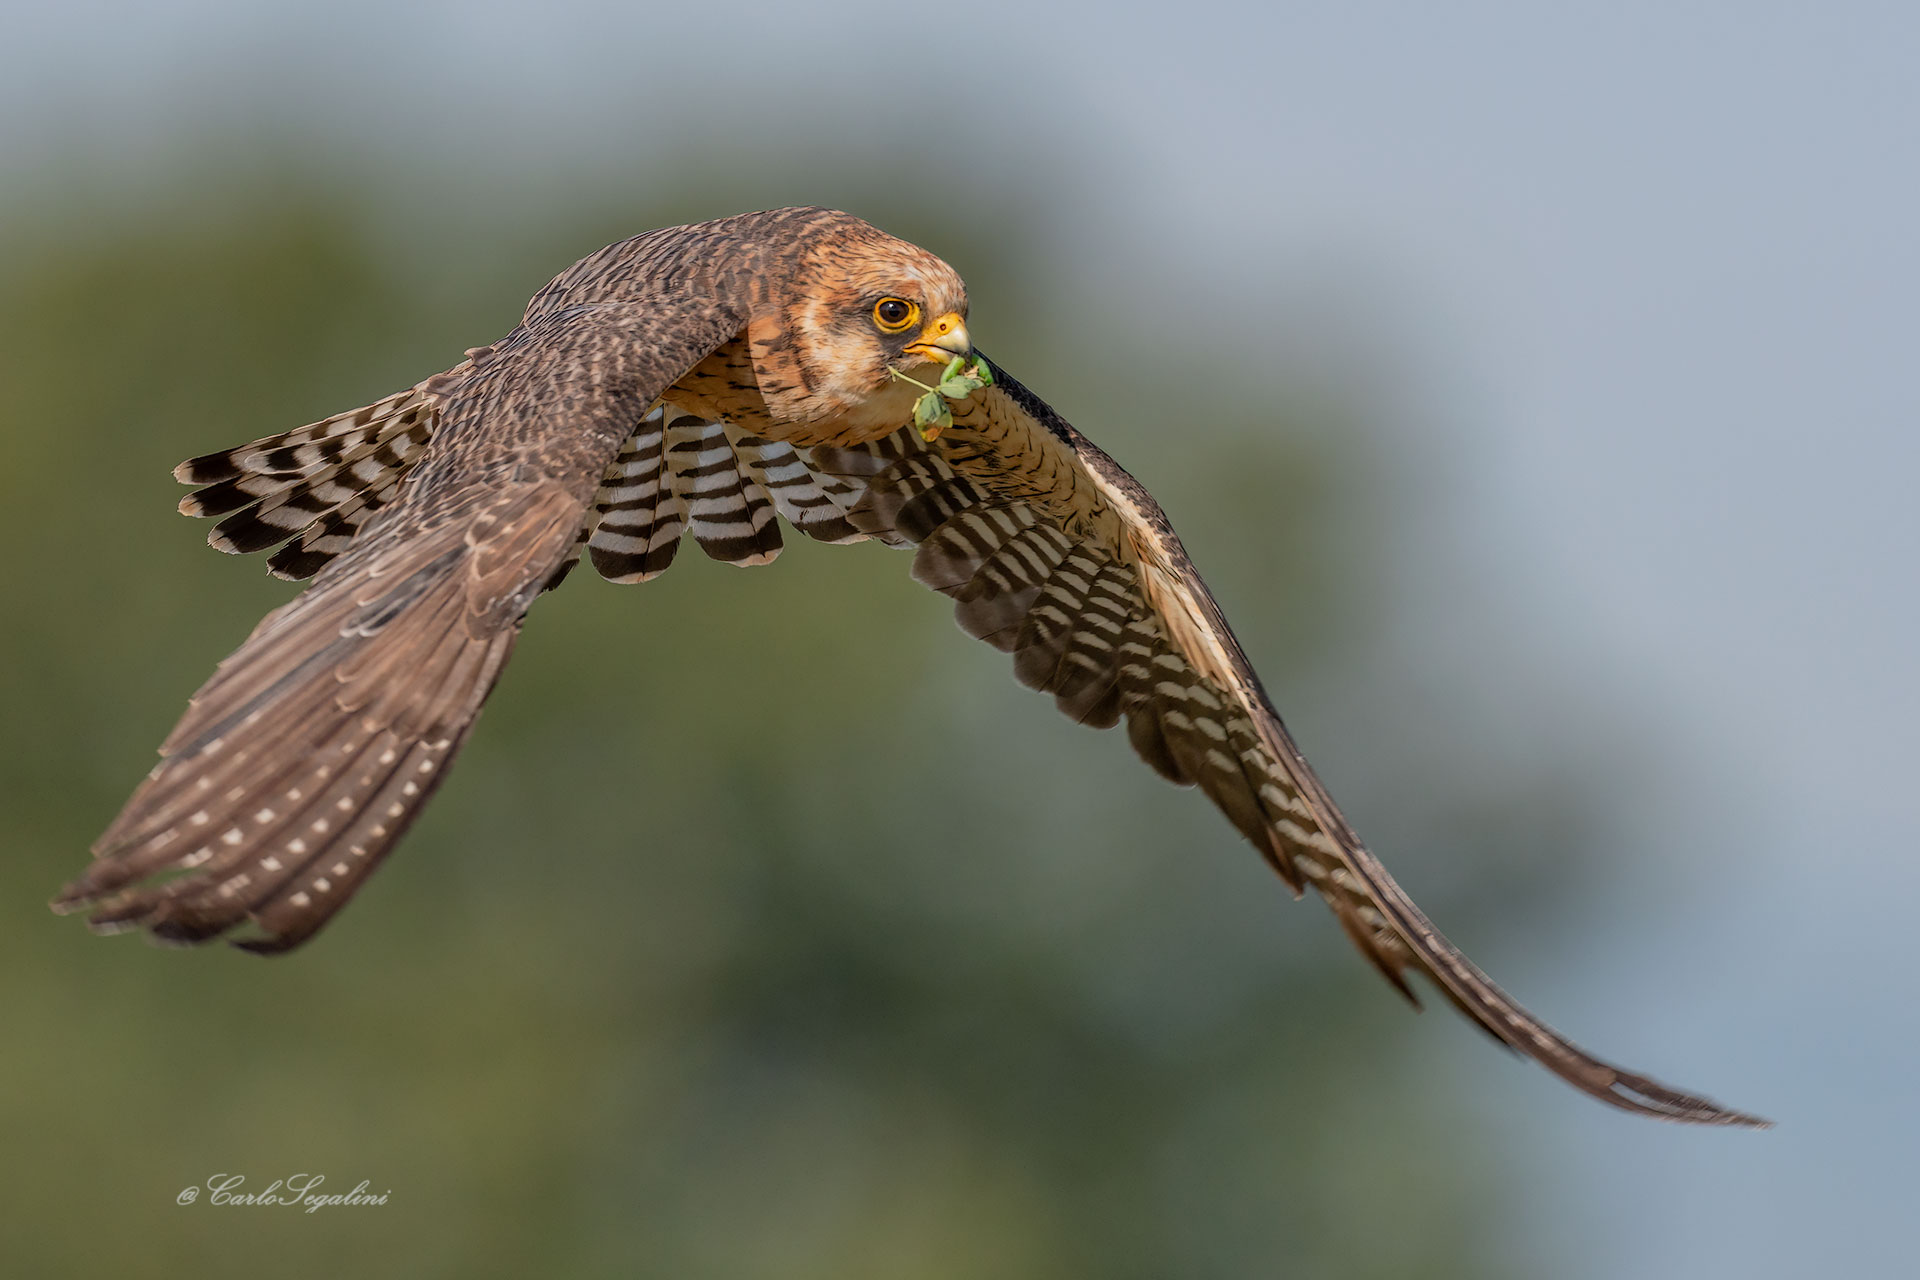 Female cuckoo falcon...